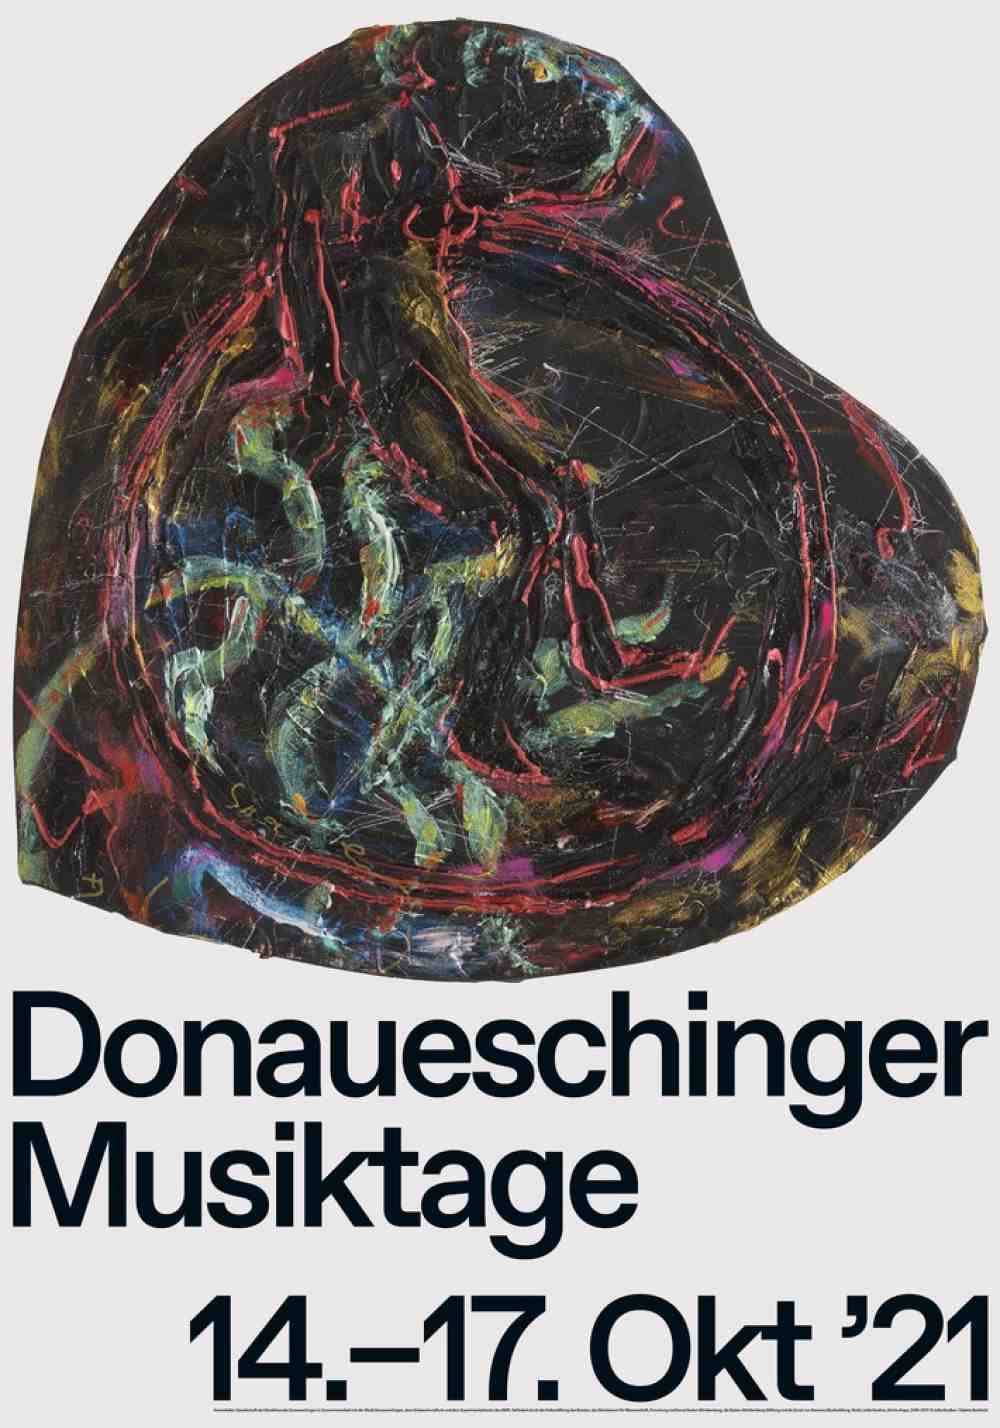 100 Jahre Donaueschinger Musiktage: Künstlerplakat von Jutta Koether